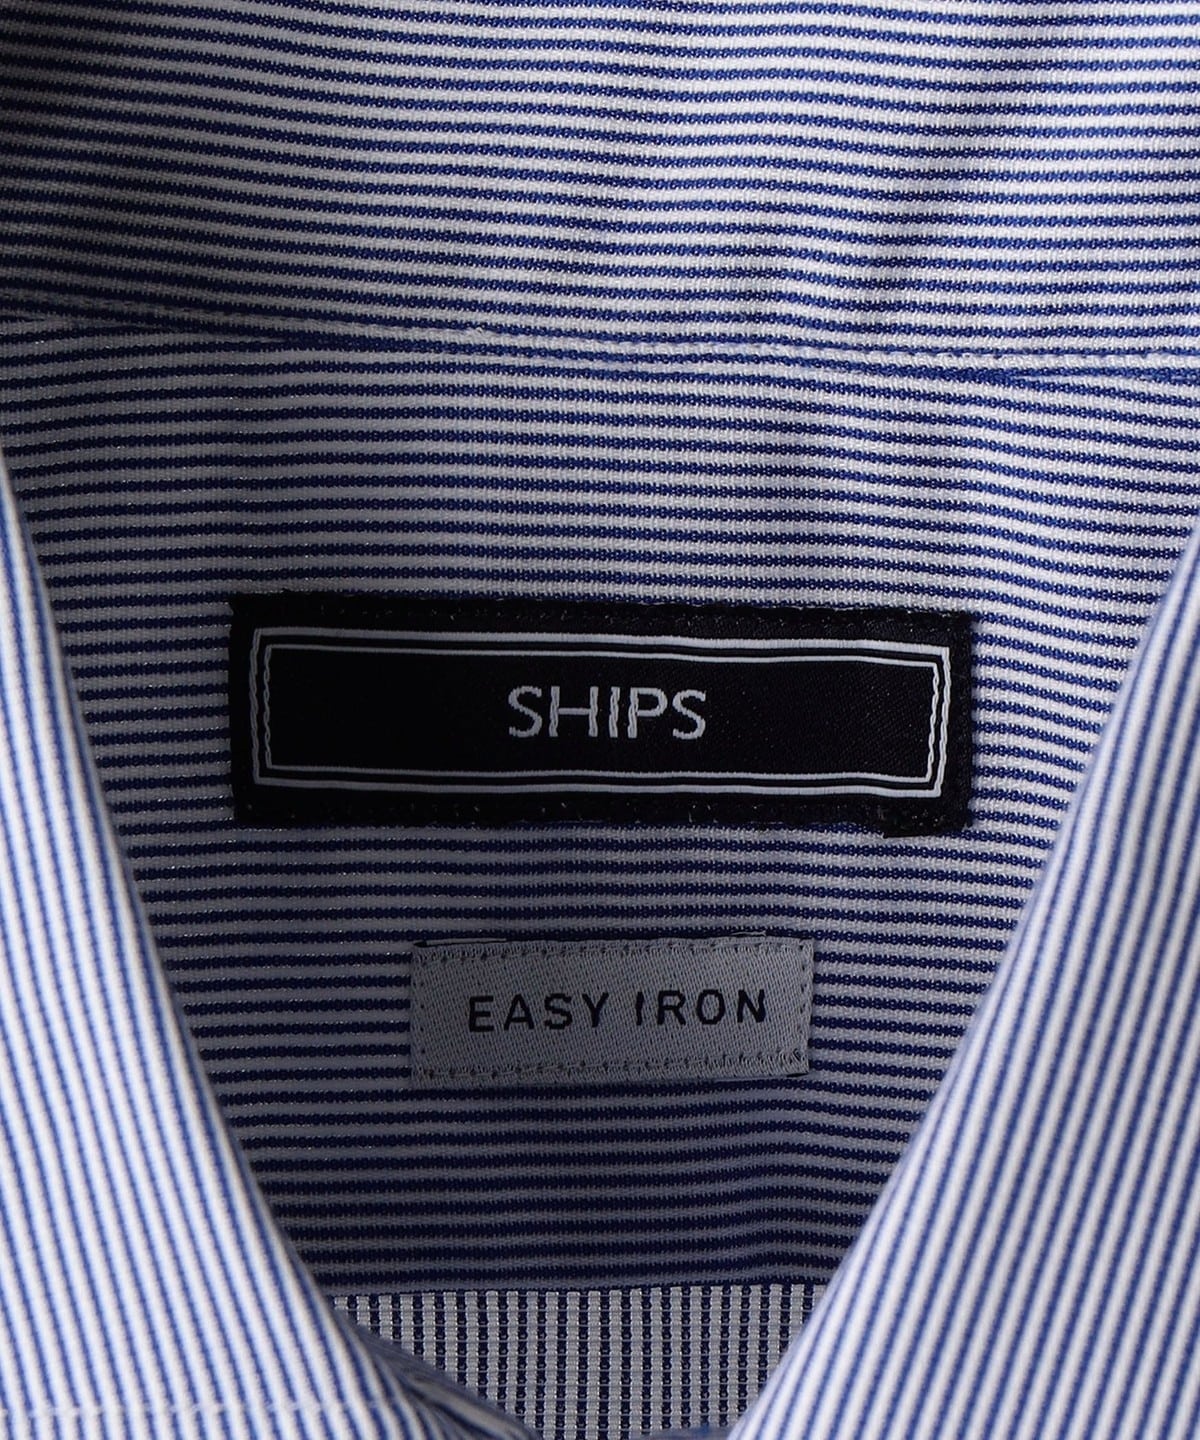 SHIPS: イージーアイロン ピンストライプ ワイドカラー シャツ: シャツ 